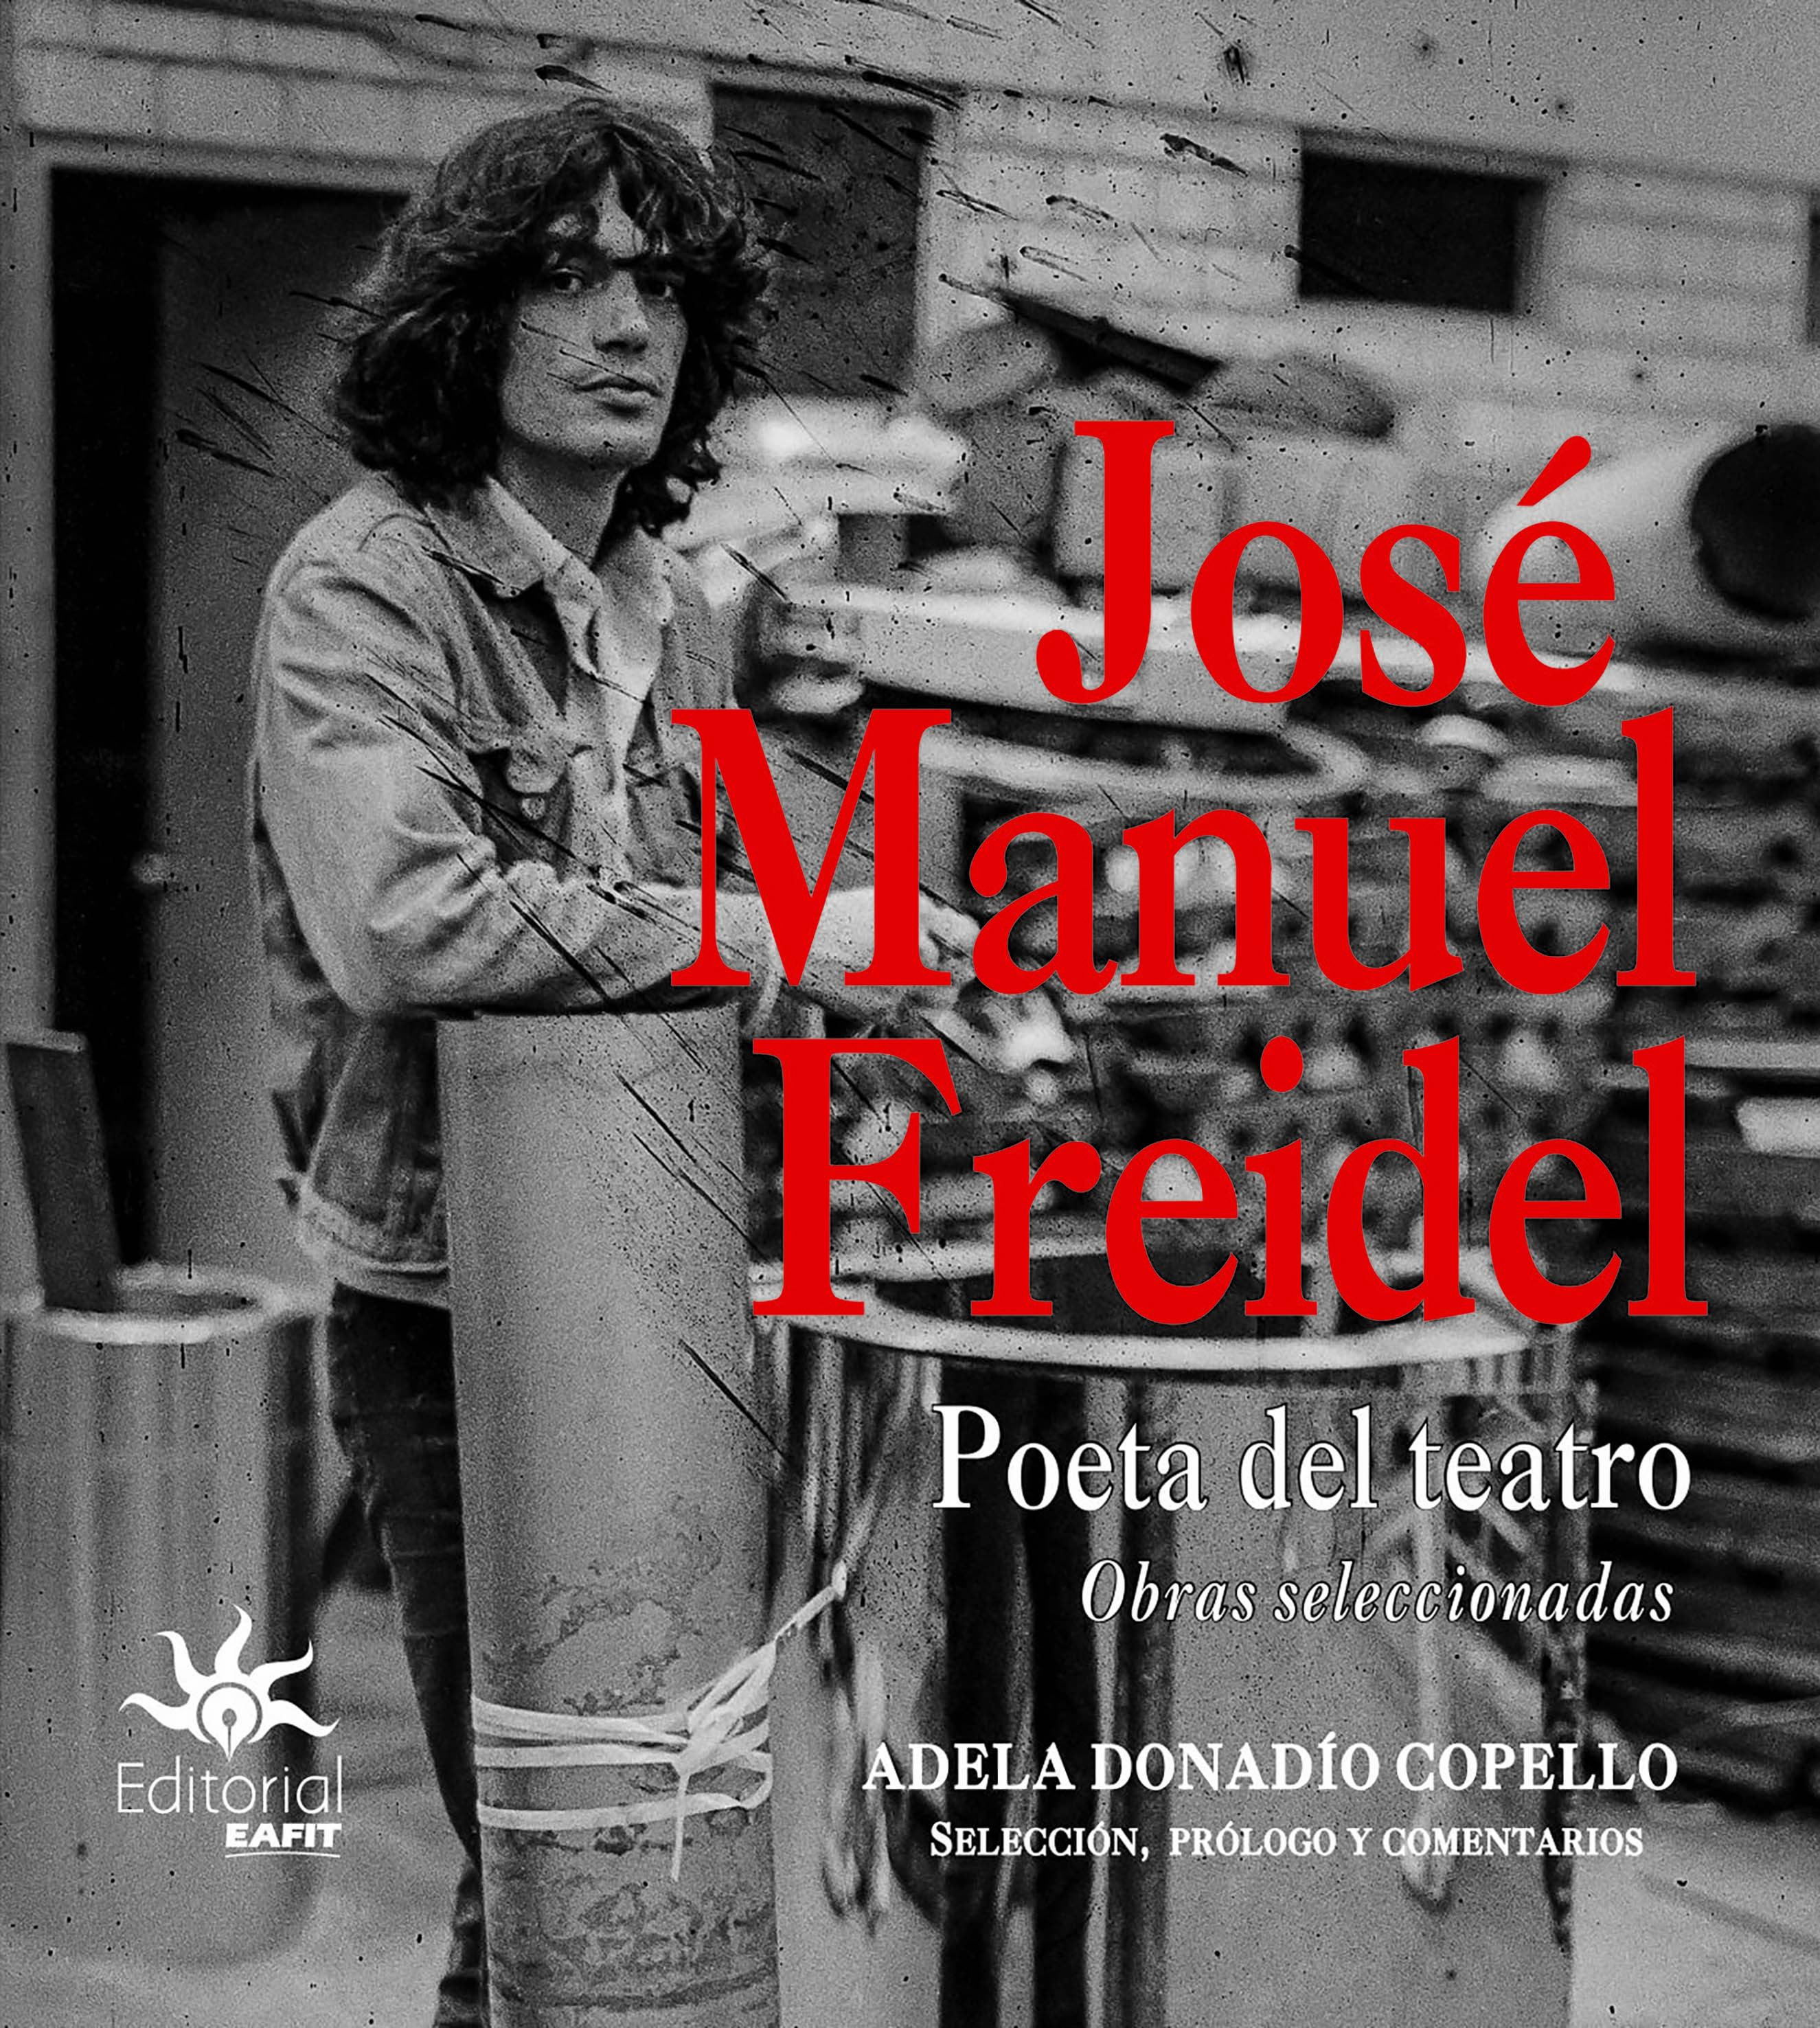 Jos‚ Manuel Freidel-Poeta del teatro.jpg